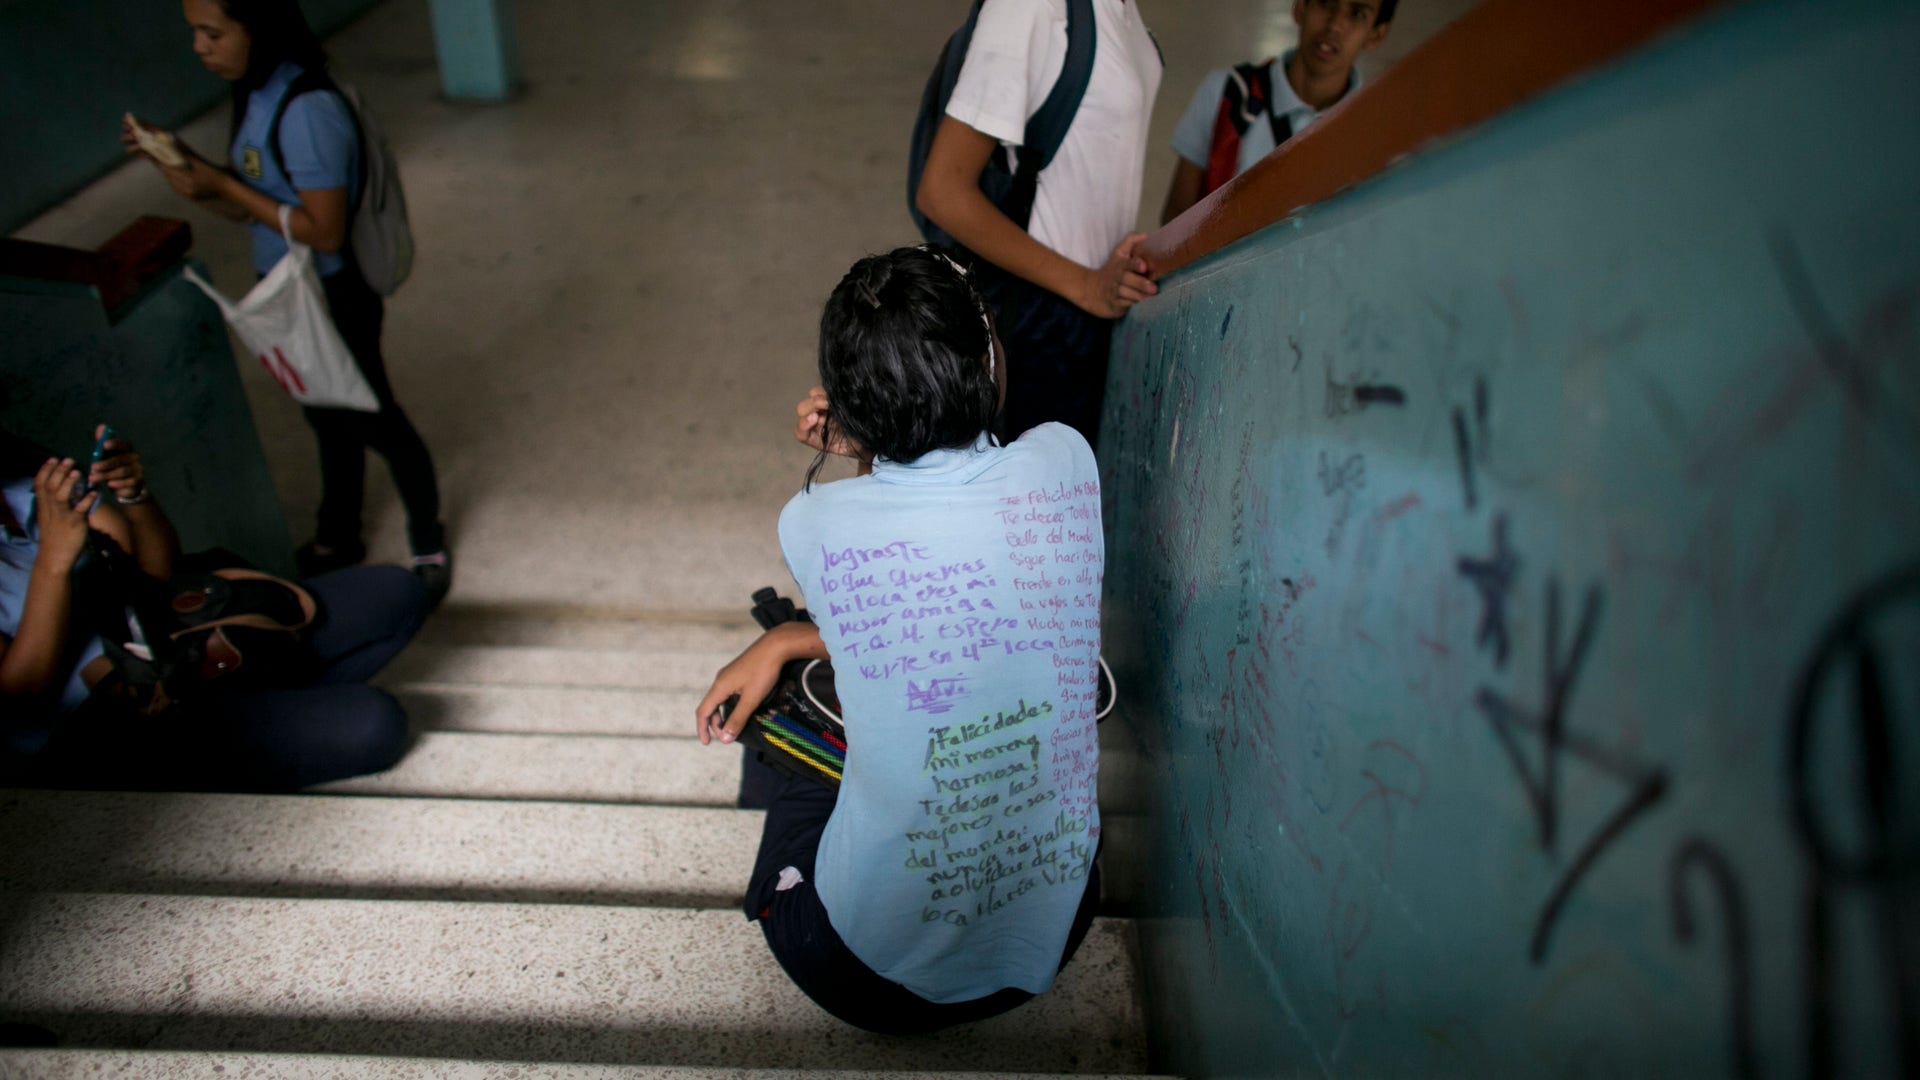 Проблема нехватки школ. Школы в Венесуэле. Нехватка школ. Школьное образование в Венесуэле. Школьники Венесуэлы.